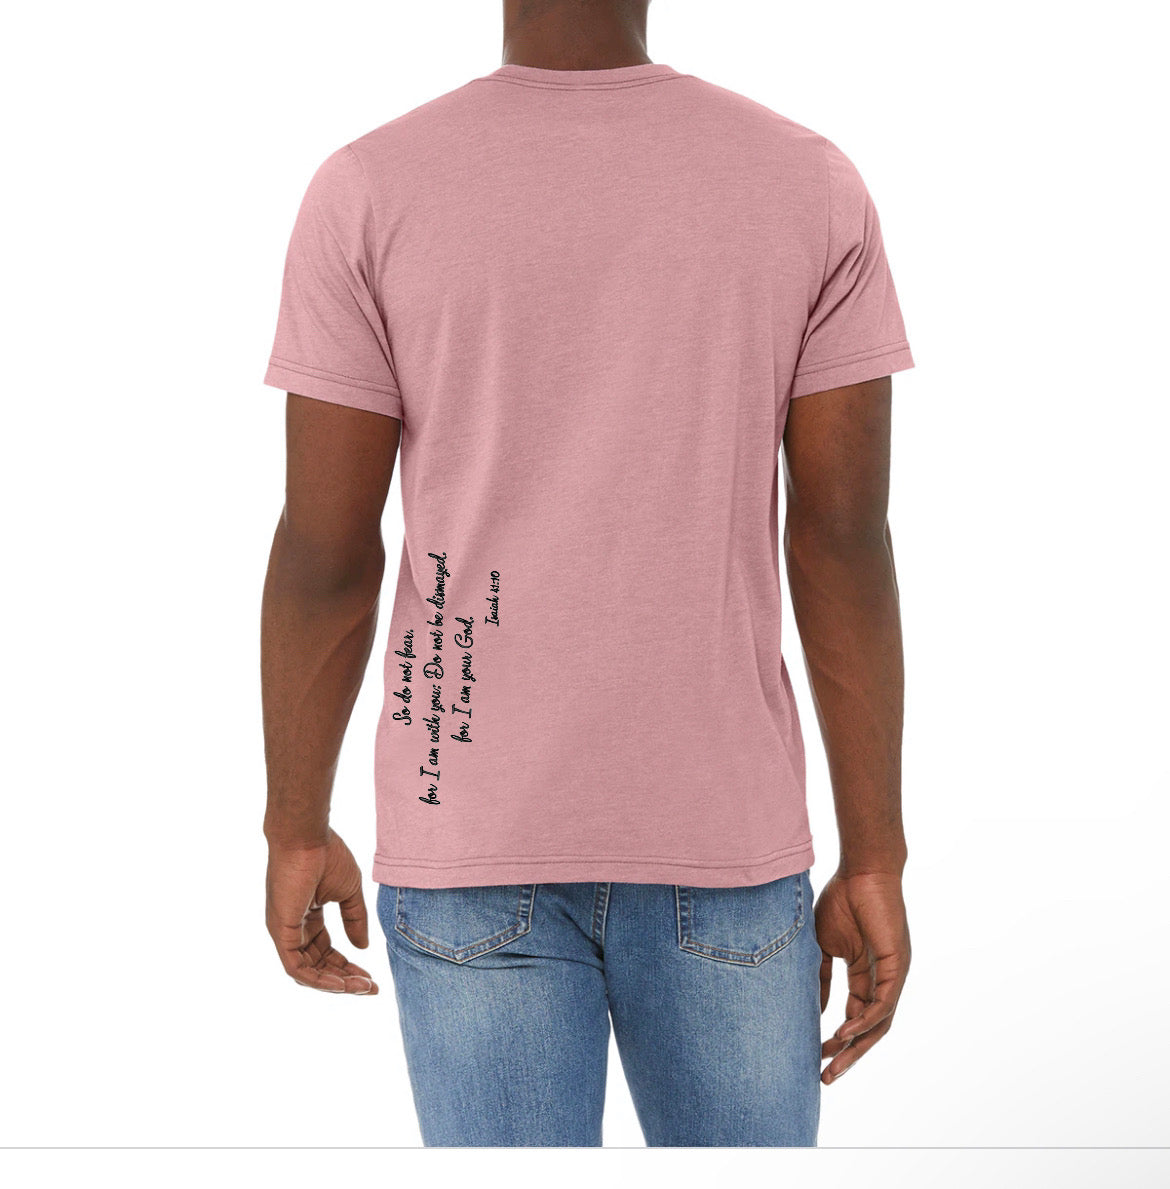 Unisex t-shirt: Faith over fear